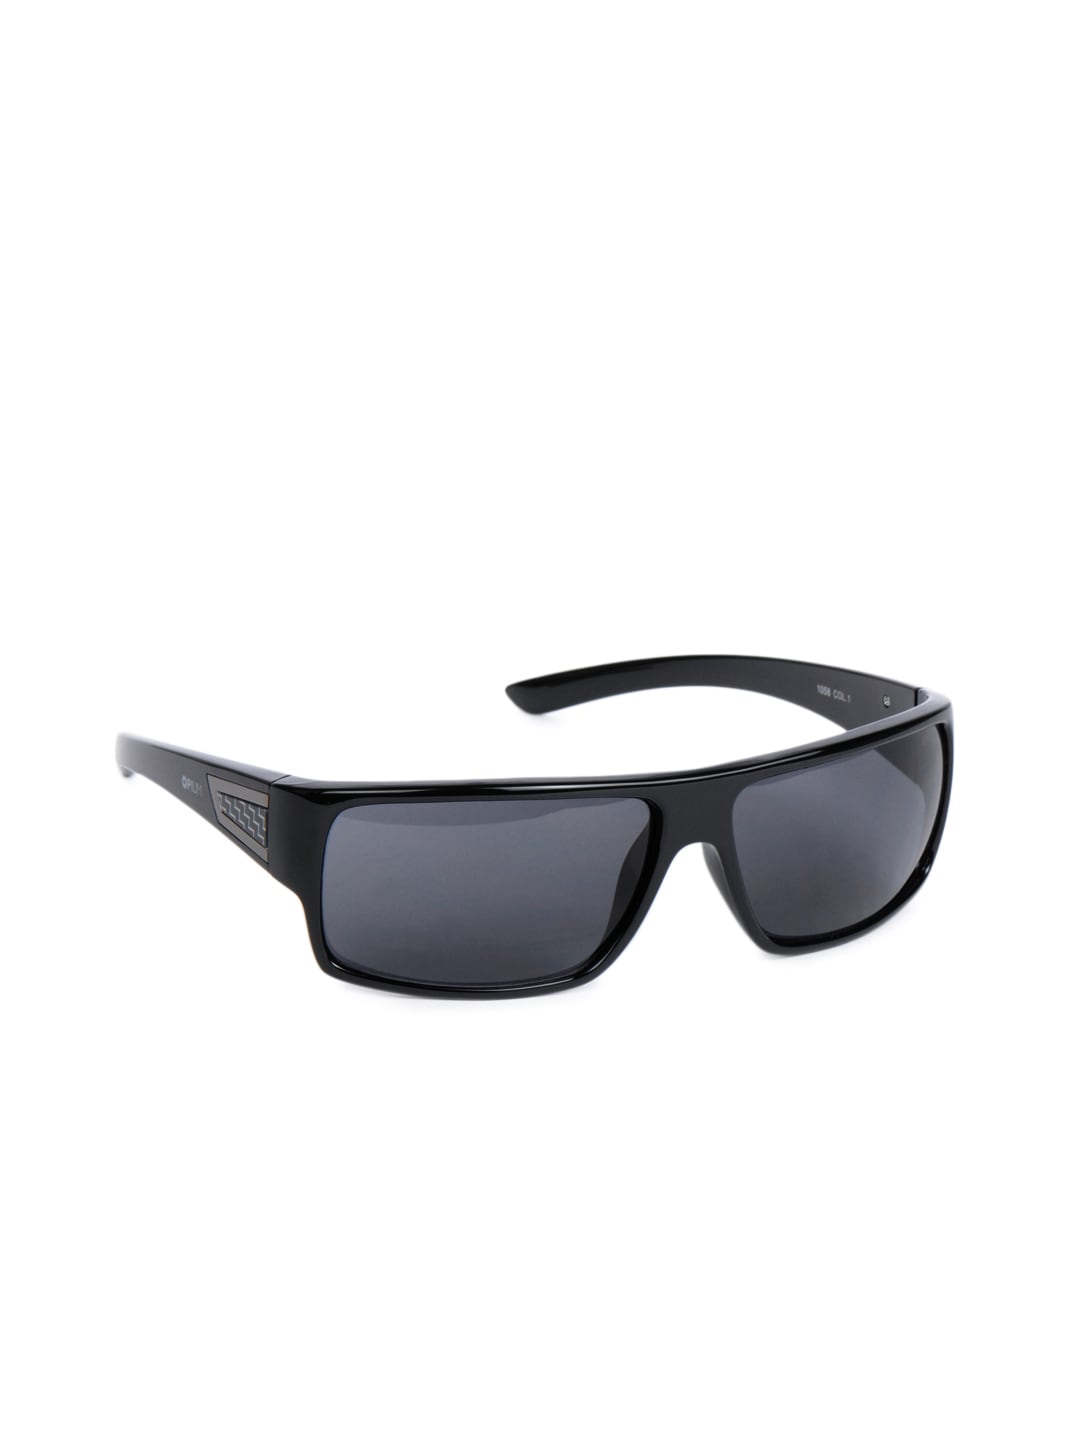 Opium Unisex Black Sunglasses